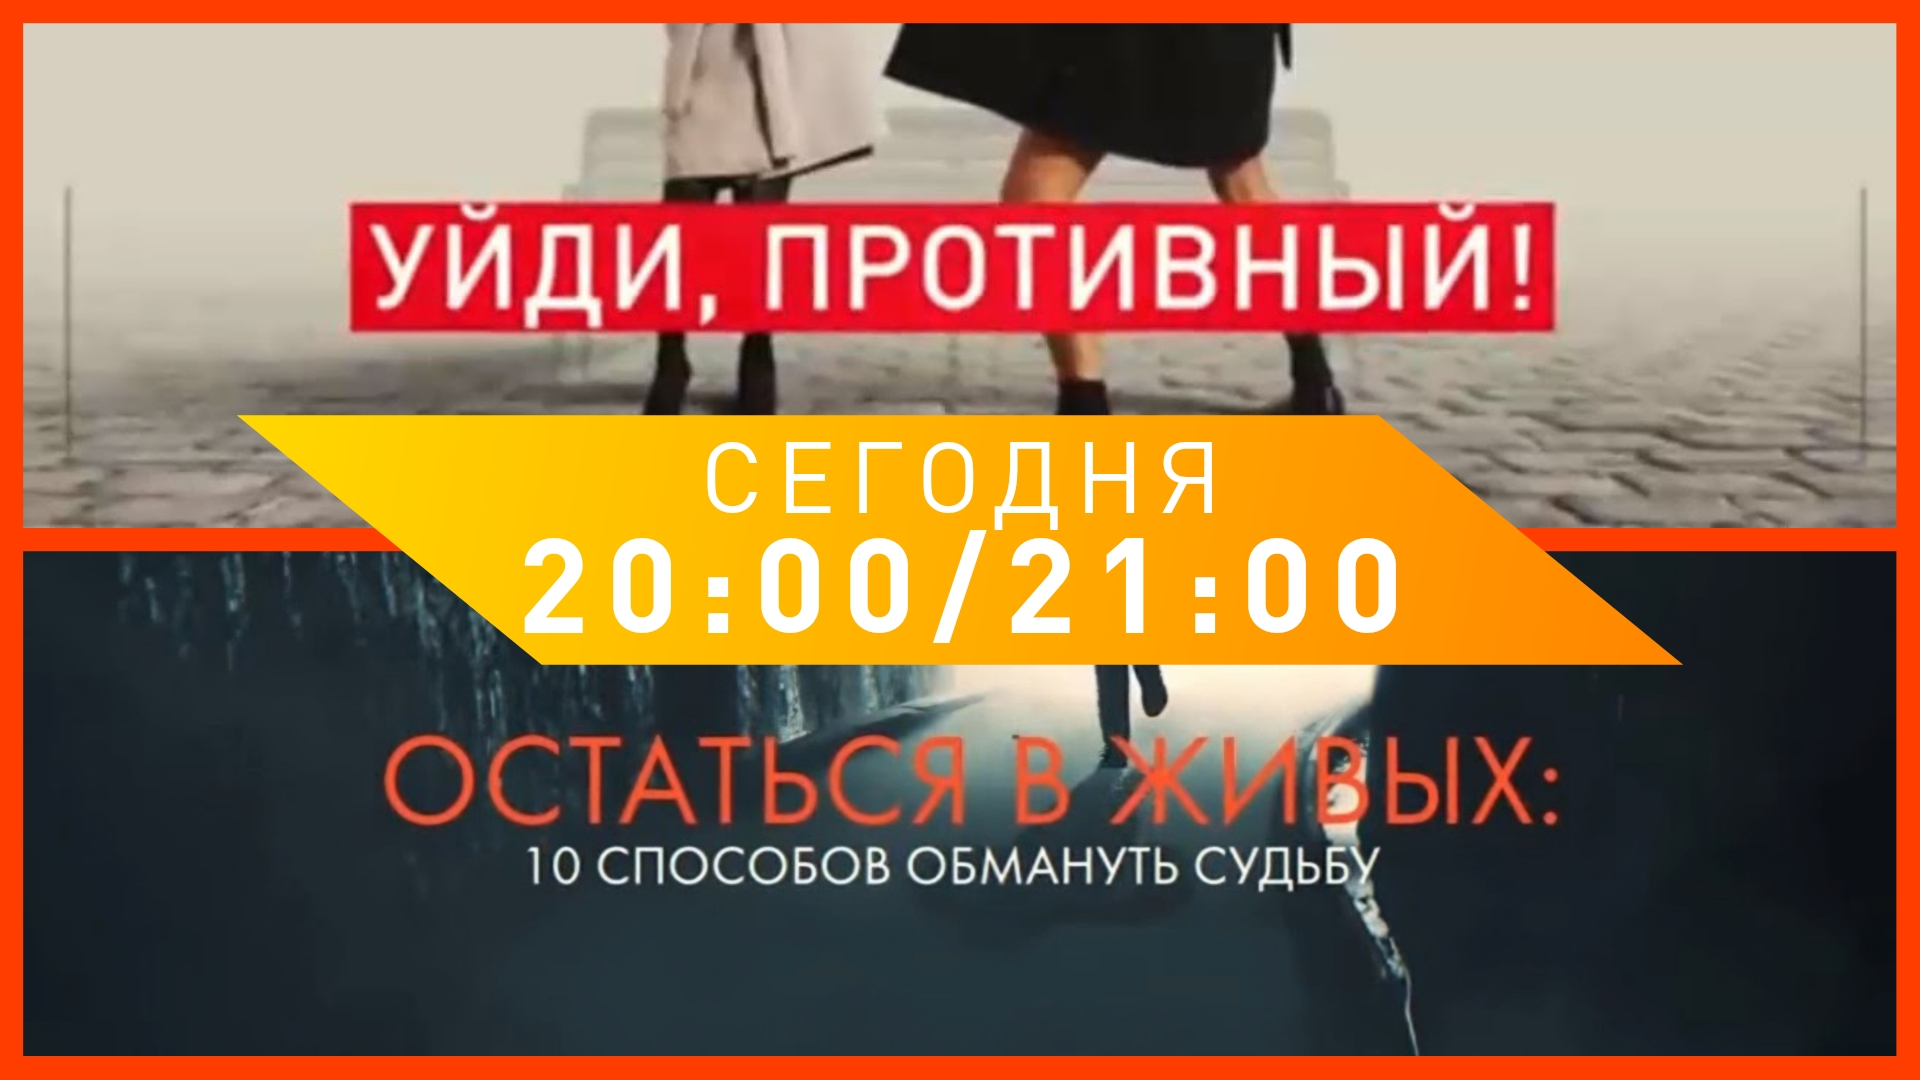 Скриншоты анонса документального расследования и проекта (Рен ТВ, 18.01.2019)